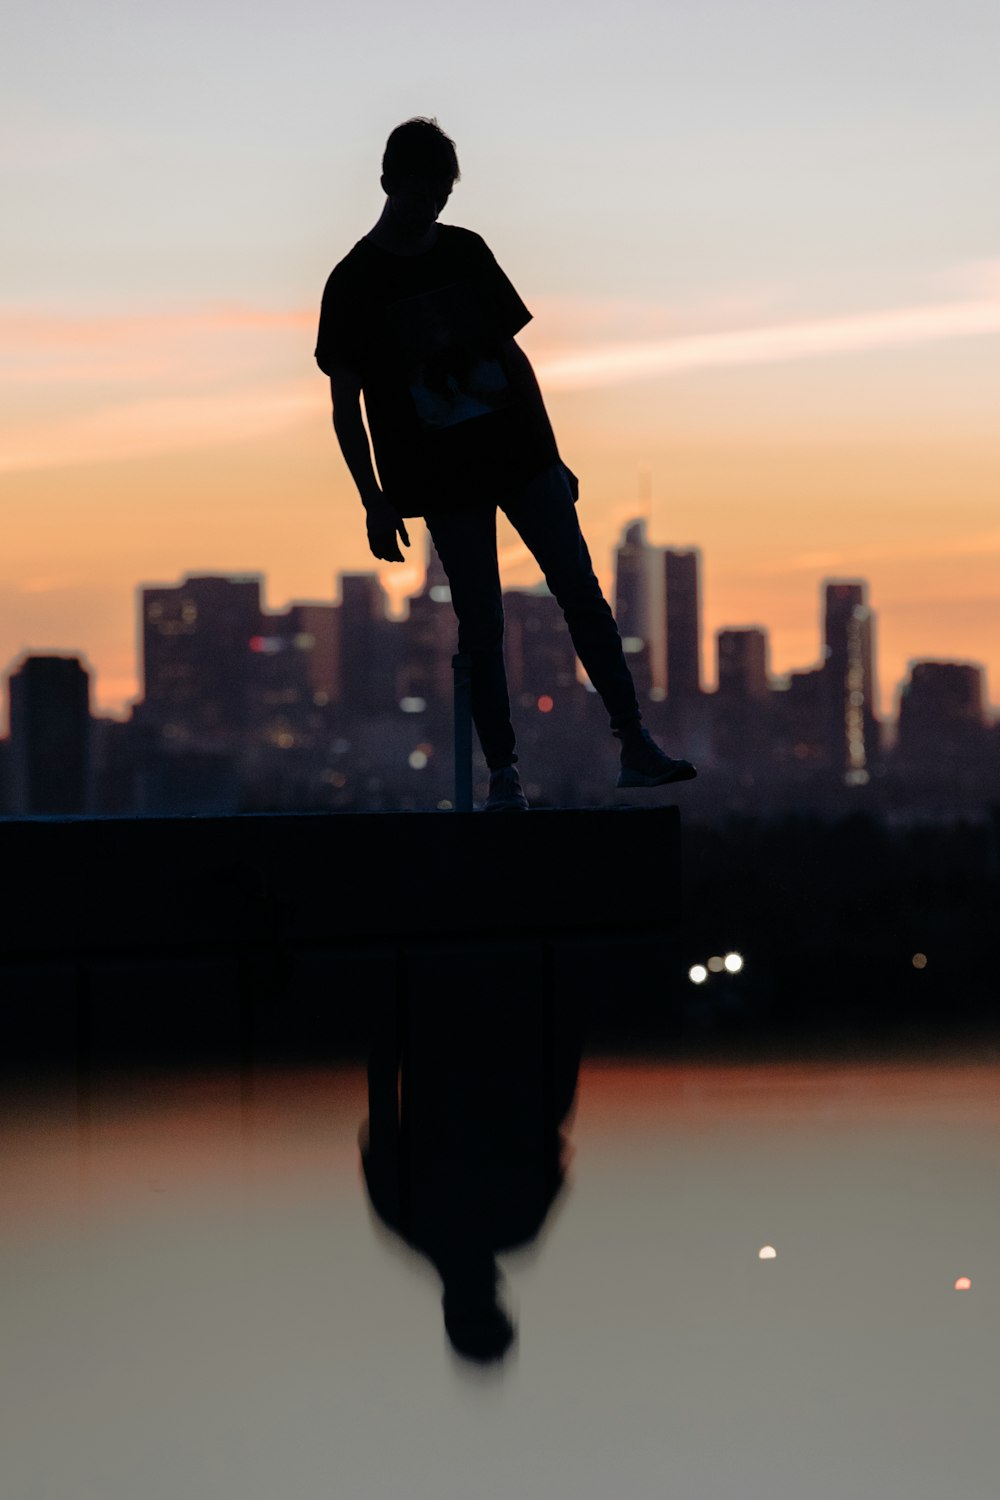 photographie de silhouette d’une personne levant son pied